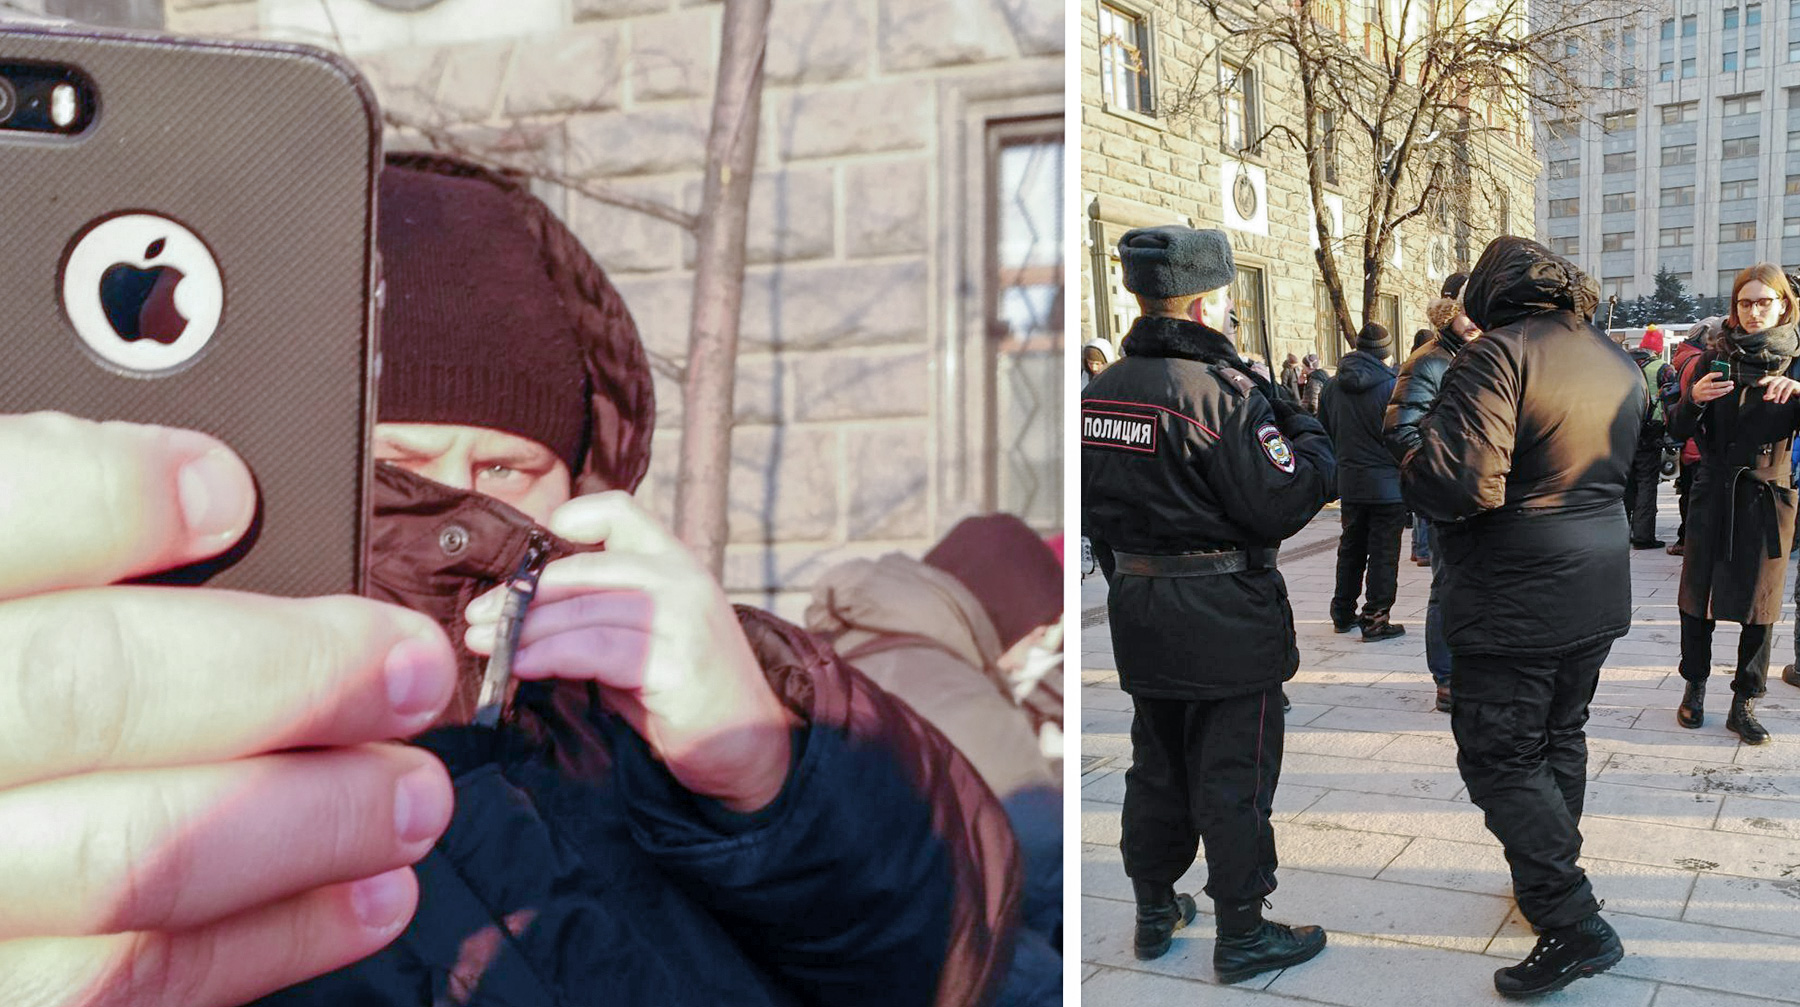 Дмитрий Иванов уже обратился к правозащитникам и ждет выхода на свободу Льва Пономарева Коллаж: © Daily Storm